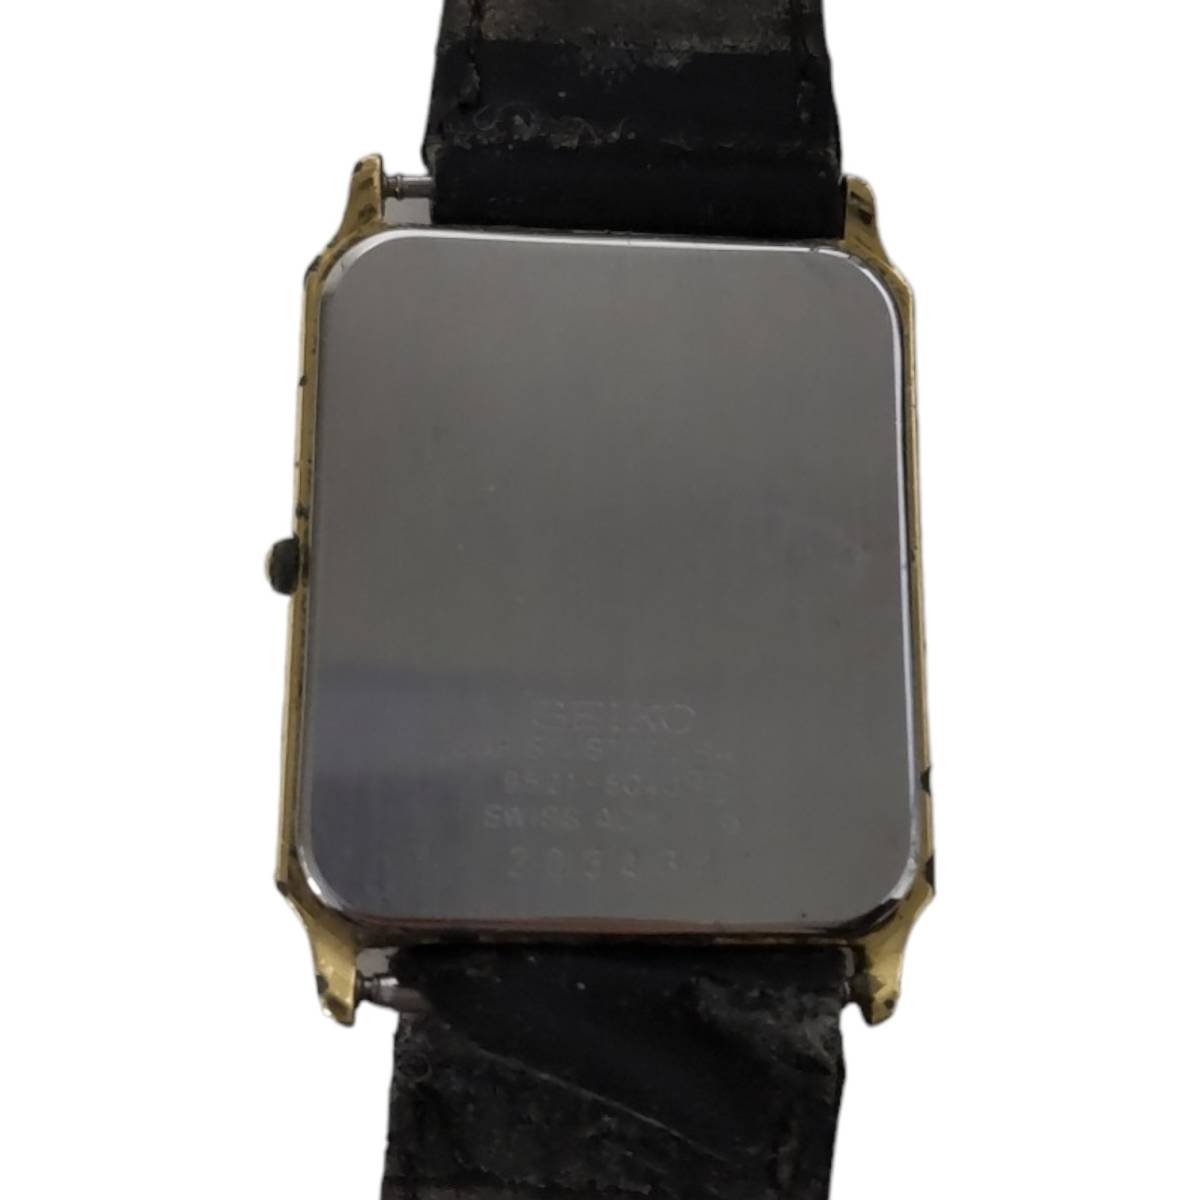 【中古品】SEIKO セイコー 9521-5040 文字盤ゴールド ベルト社外品 クオーツ メンズ腕時計 箱無し 本体のみ hiL2-411RO_画像6